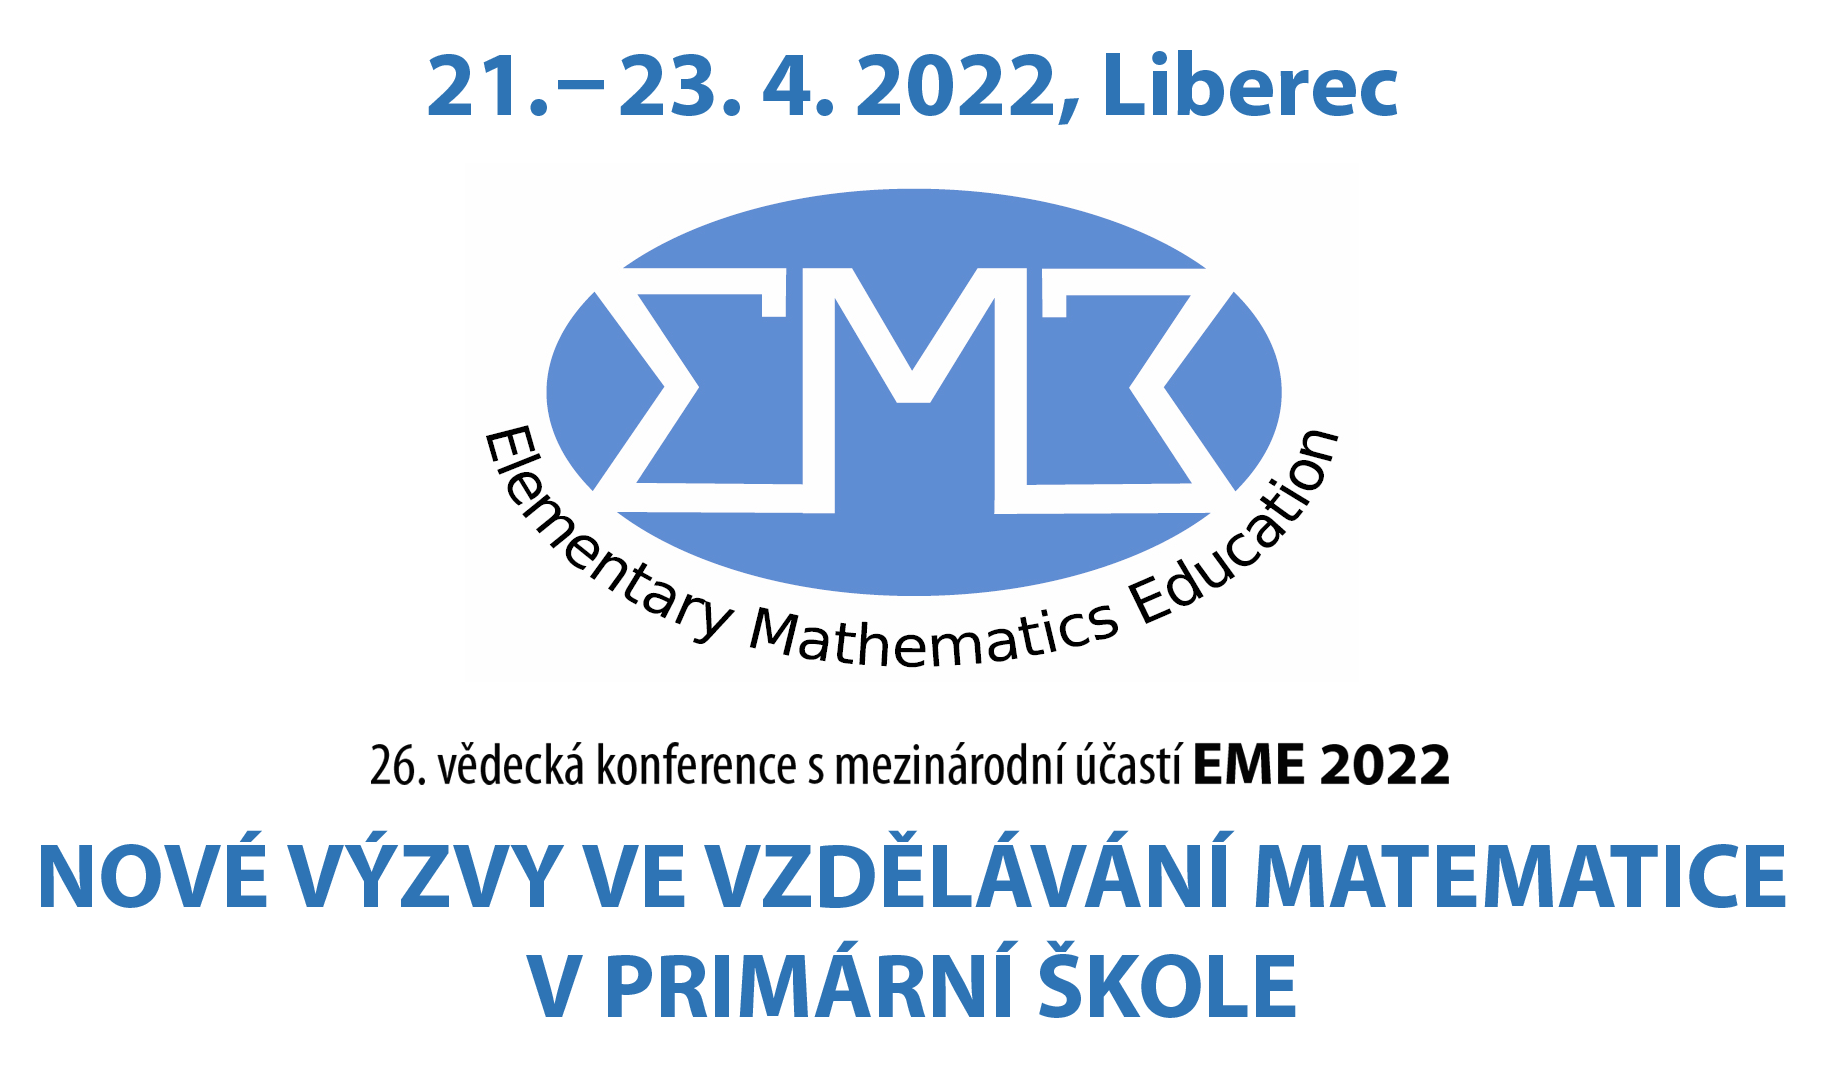 EME2022 logo